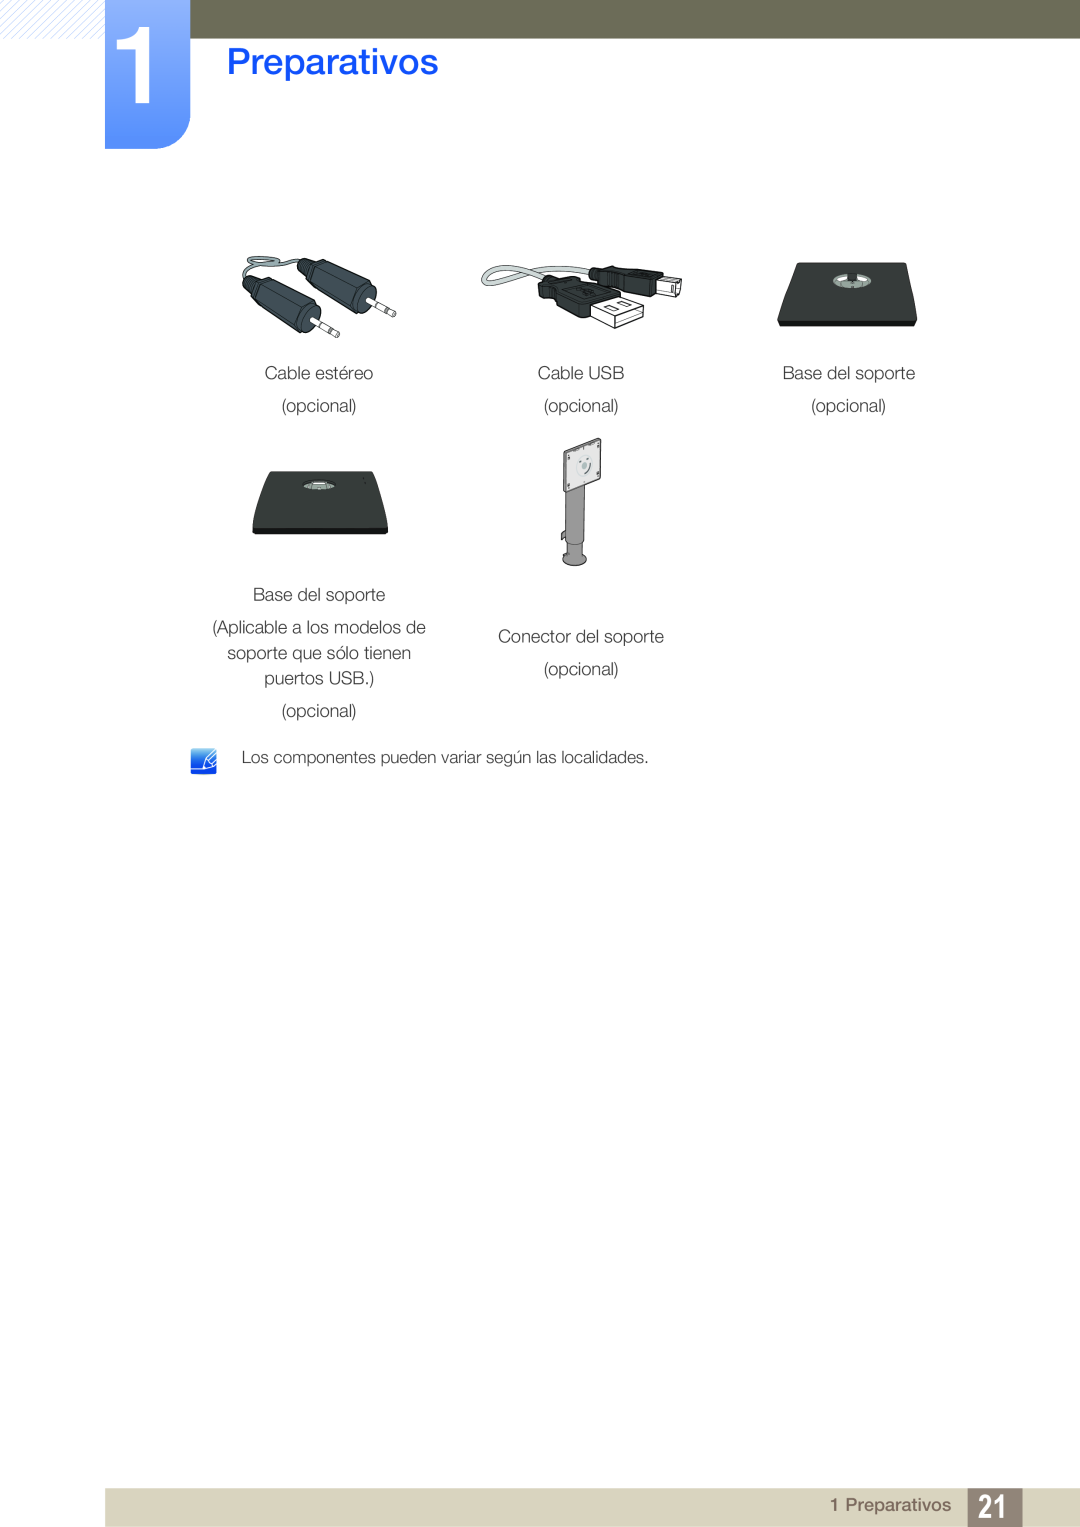 Samsung LS24E45KBSV/EN Preparativos, Cable estéreo, Base del soporte, opcional, Aplicable a los modelos de, puertos USB 